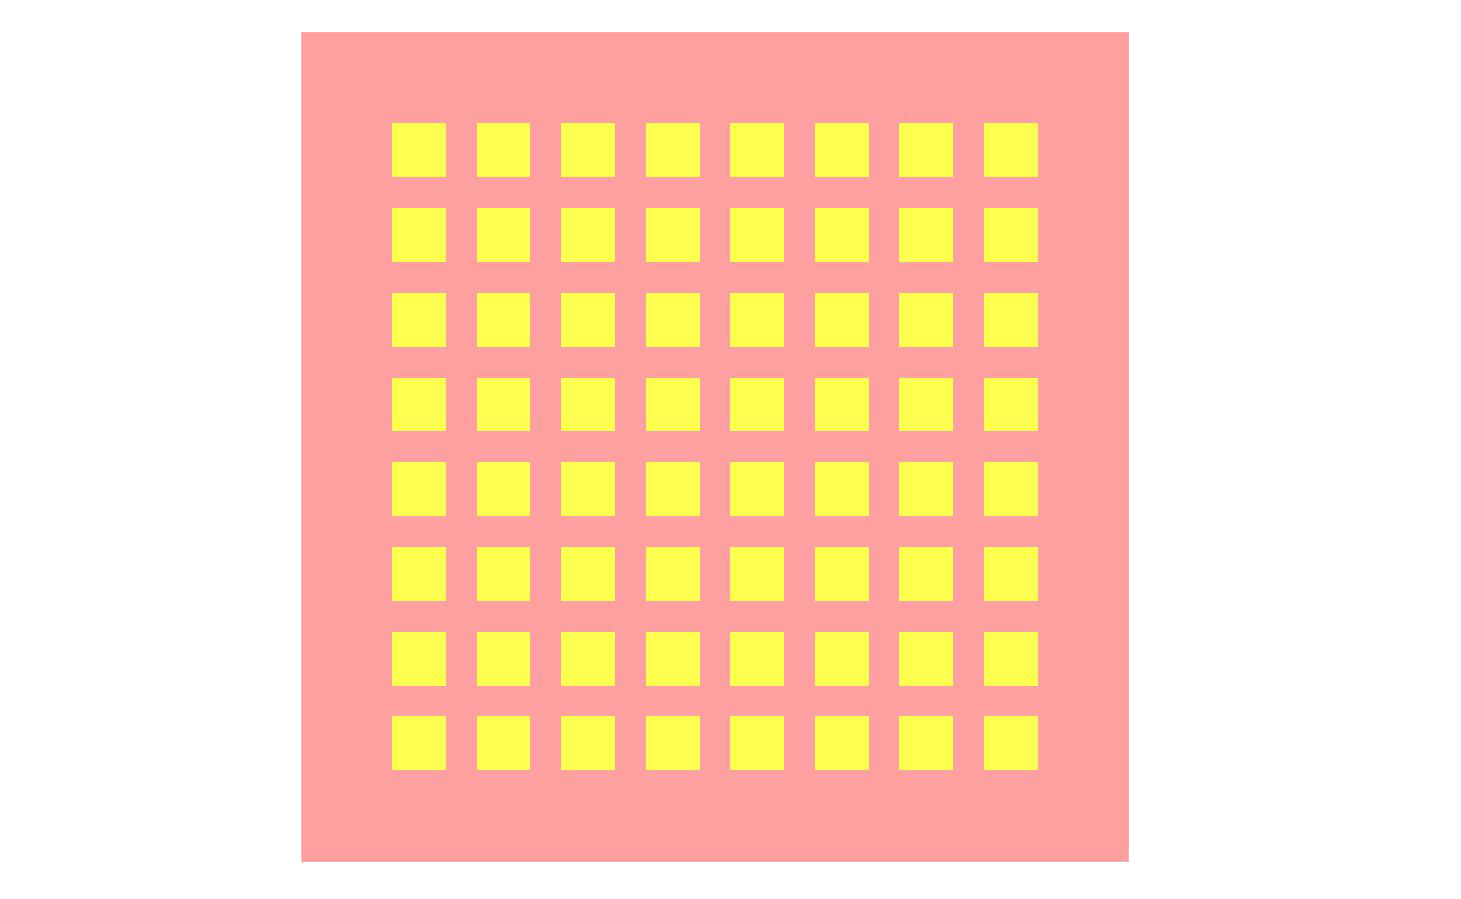 Figura 1: Vista superior de la geometría de la antena que muestra la disposición de la matriz de parches de 8x8.